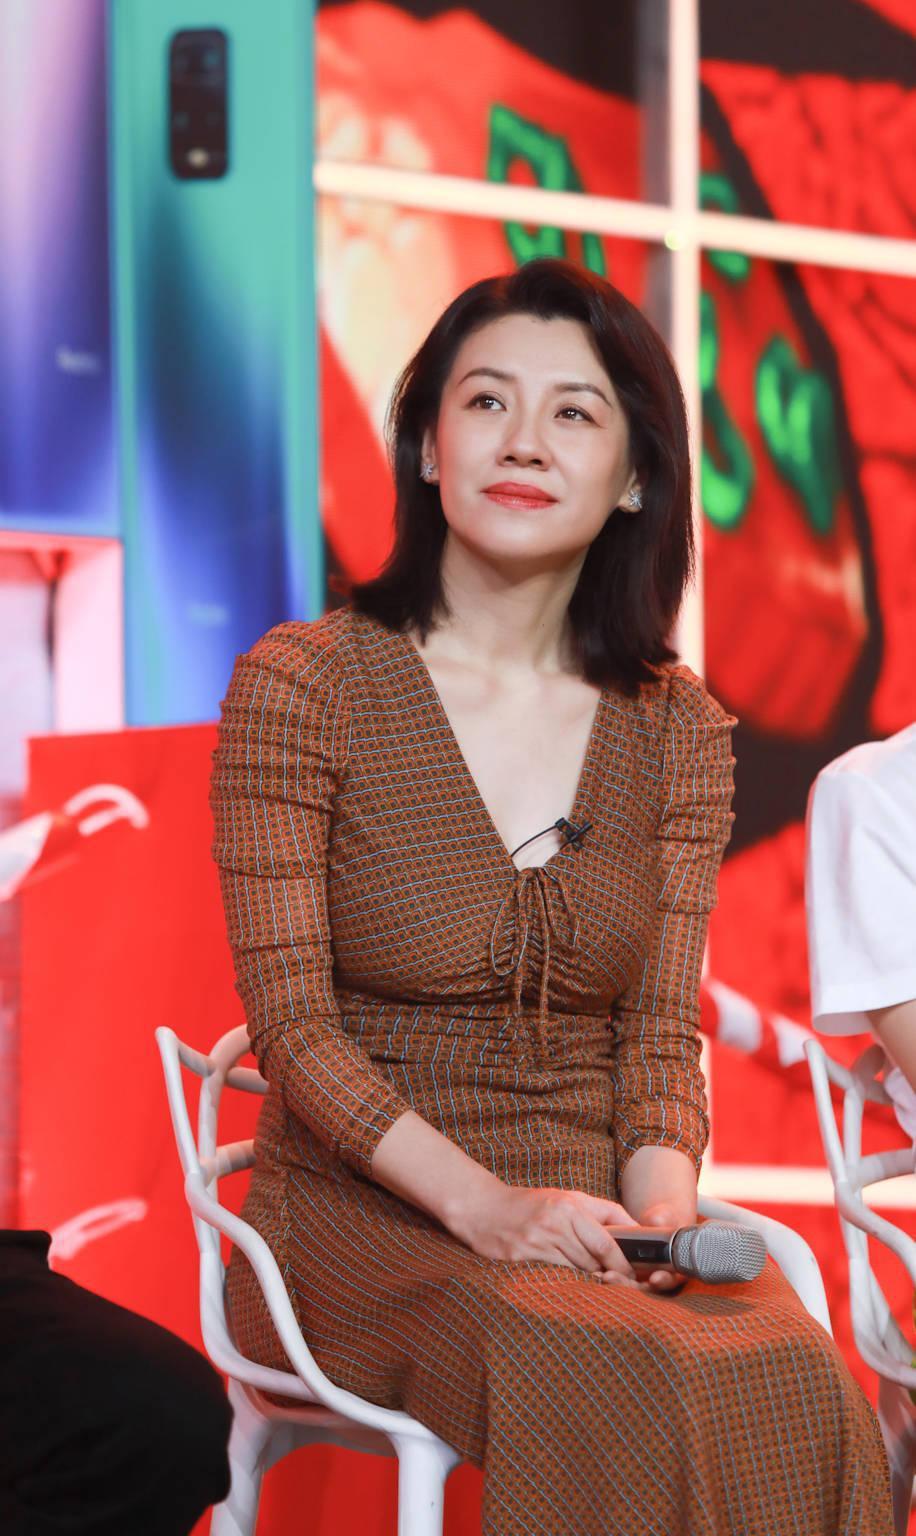 刘琳:中年女演员的坚韧与幸福 刘琳,这位才华横溢的中生代女演员,在